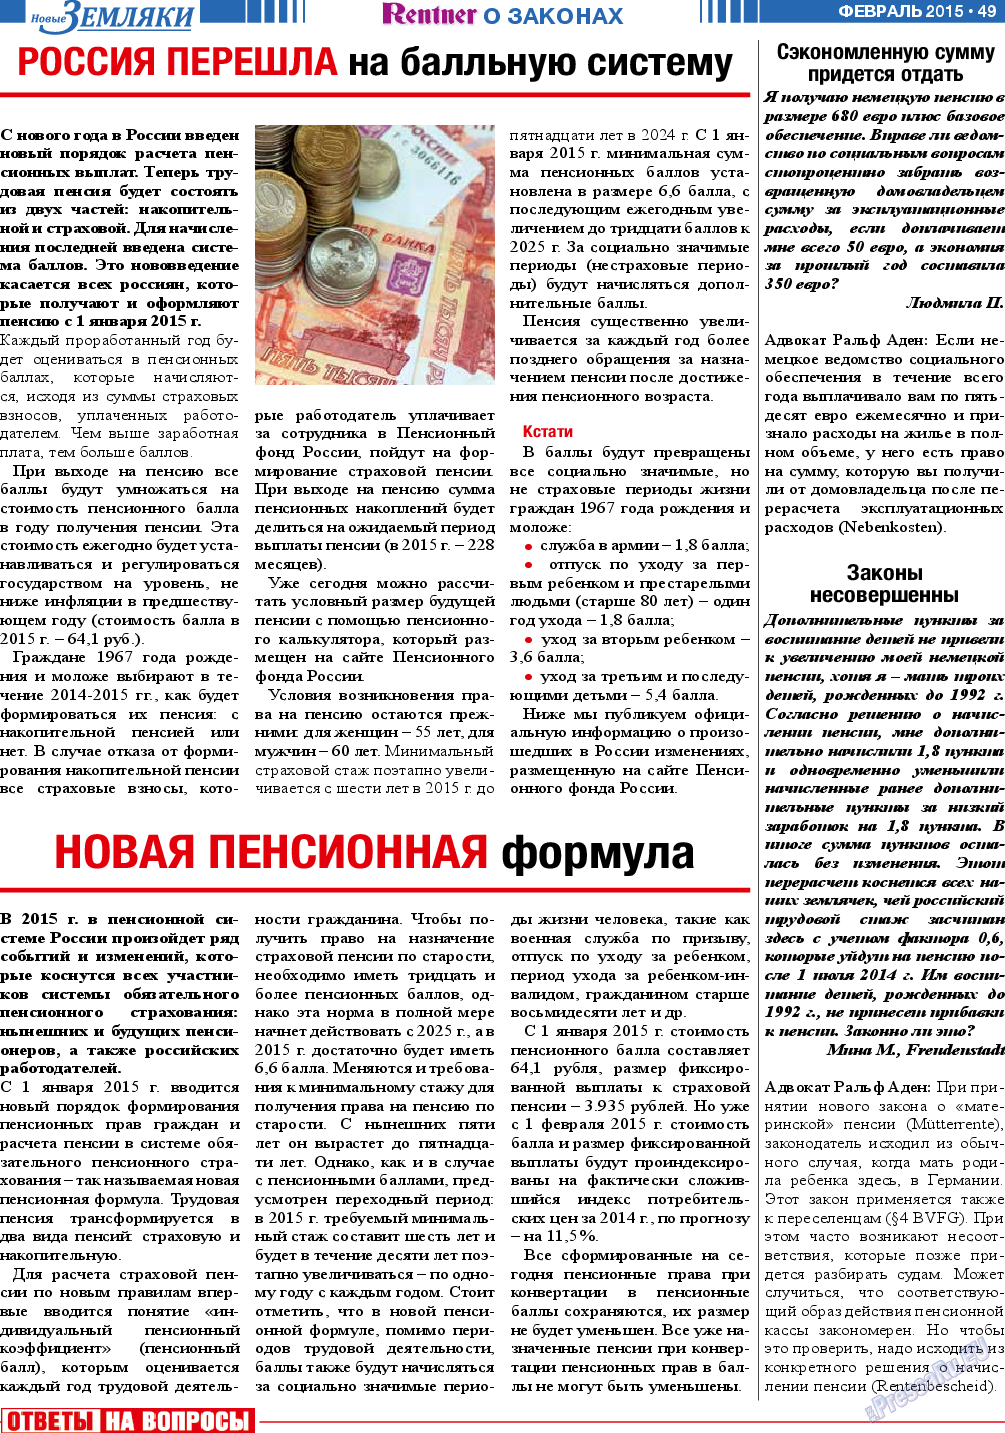 Новые Земляки, газета. 2015 №2 стр.49